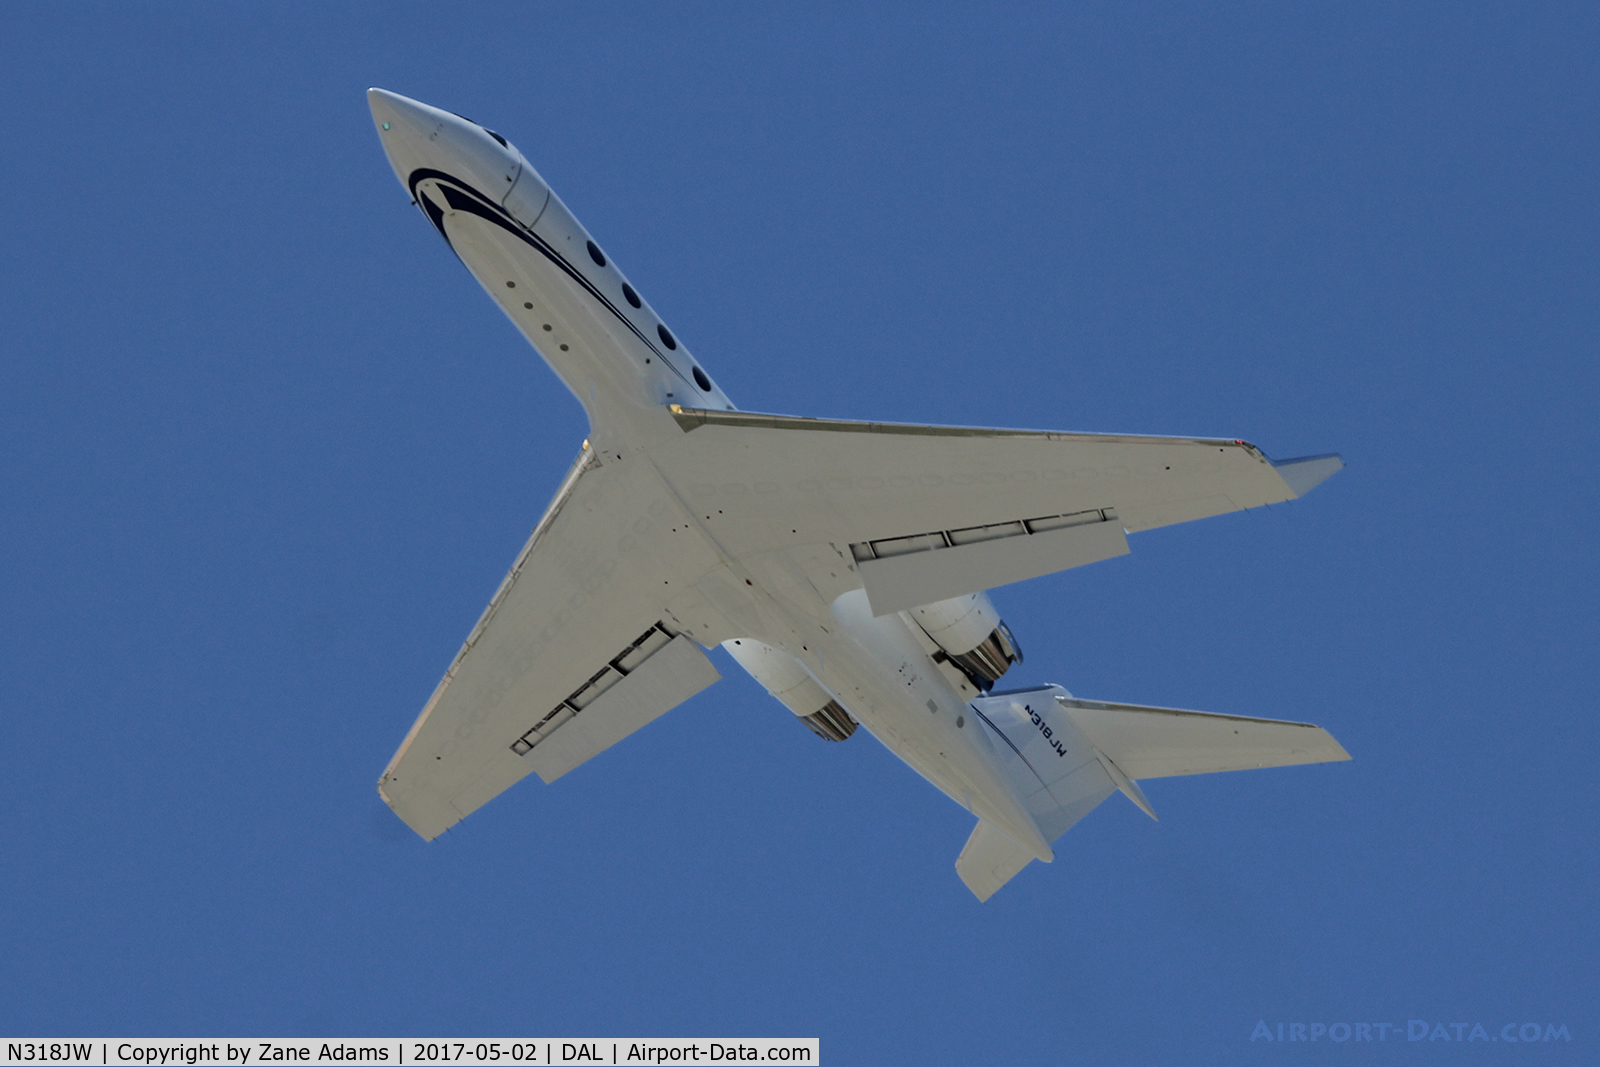 N318JW, 2004 Gulfstream Aerospace G-IV C/N 1530, Departing Dallas Love Field